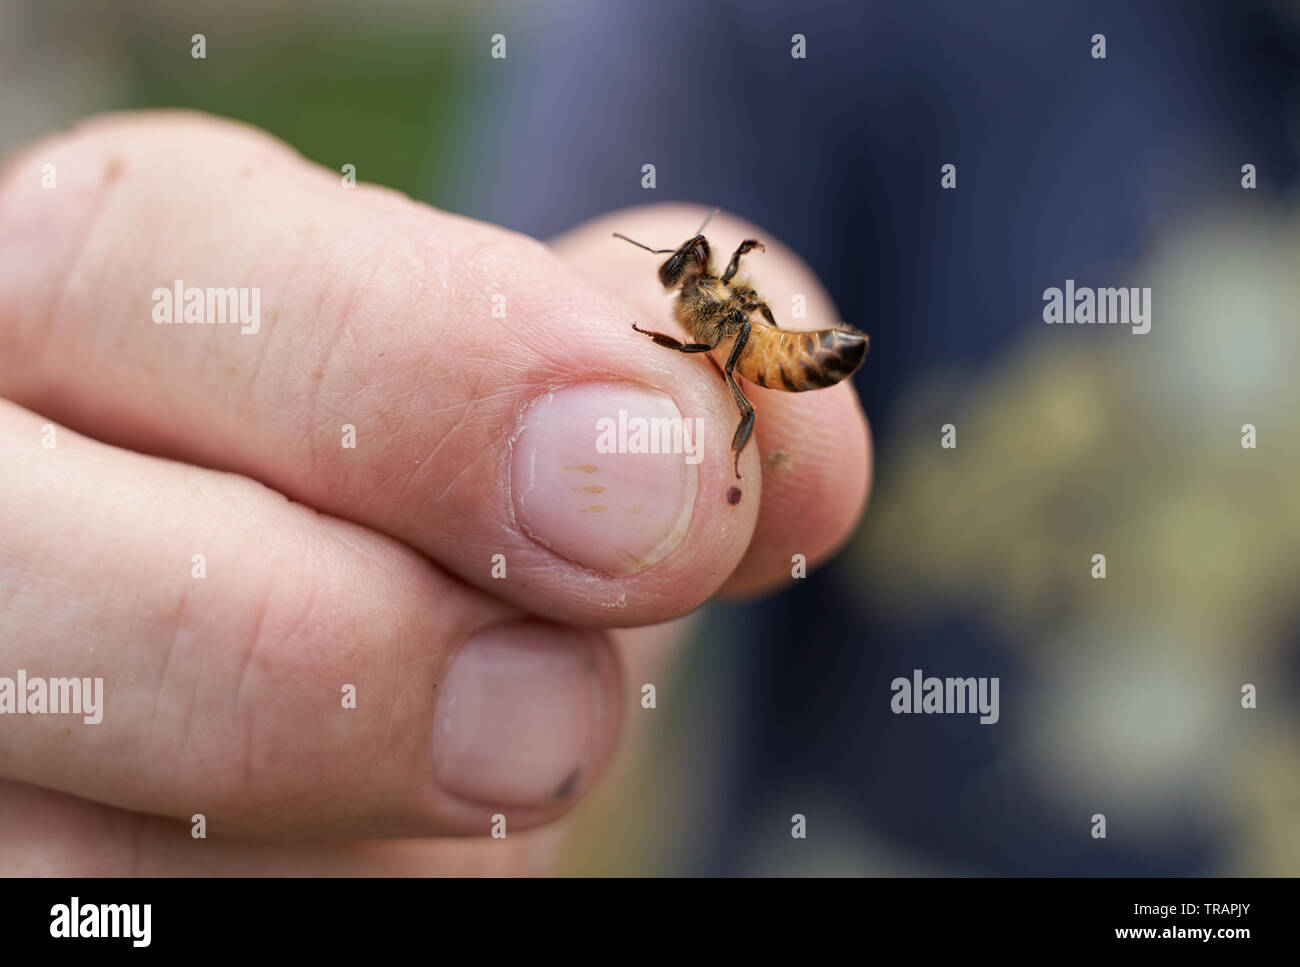 Un apiculteur peut contenir jusqu'un travailleur individuel bee (abeille) au cours d'une inspection d'une ruche. Beeking urbain est devenu beaucoup plus populaire ces dernières années. Banque D'Images